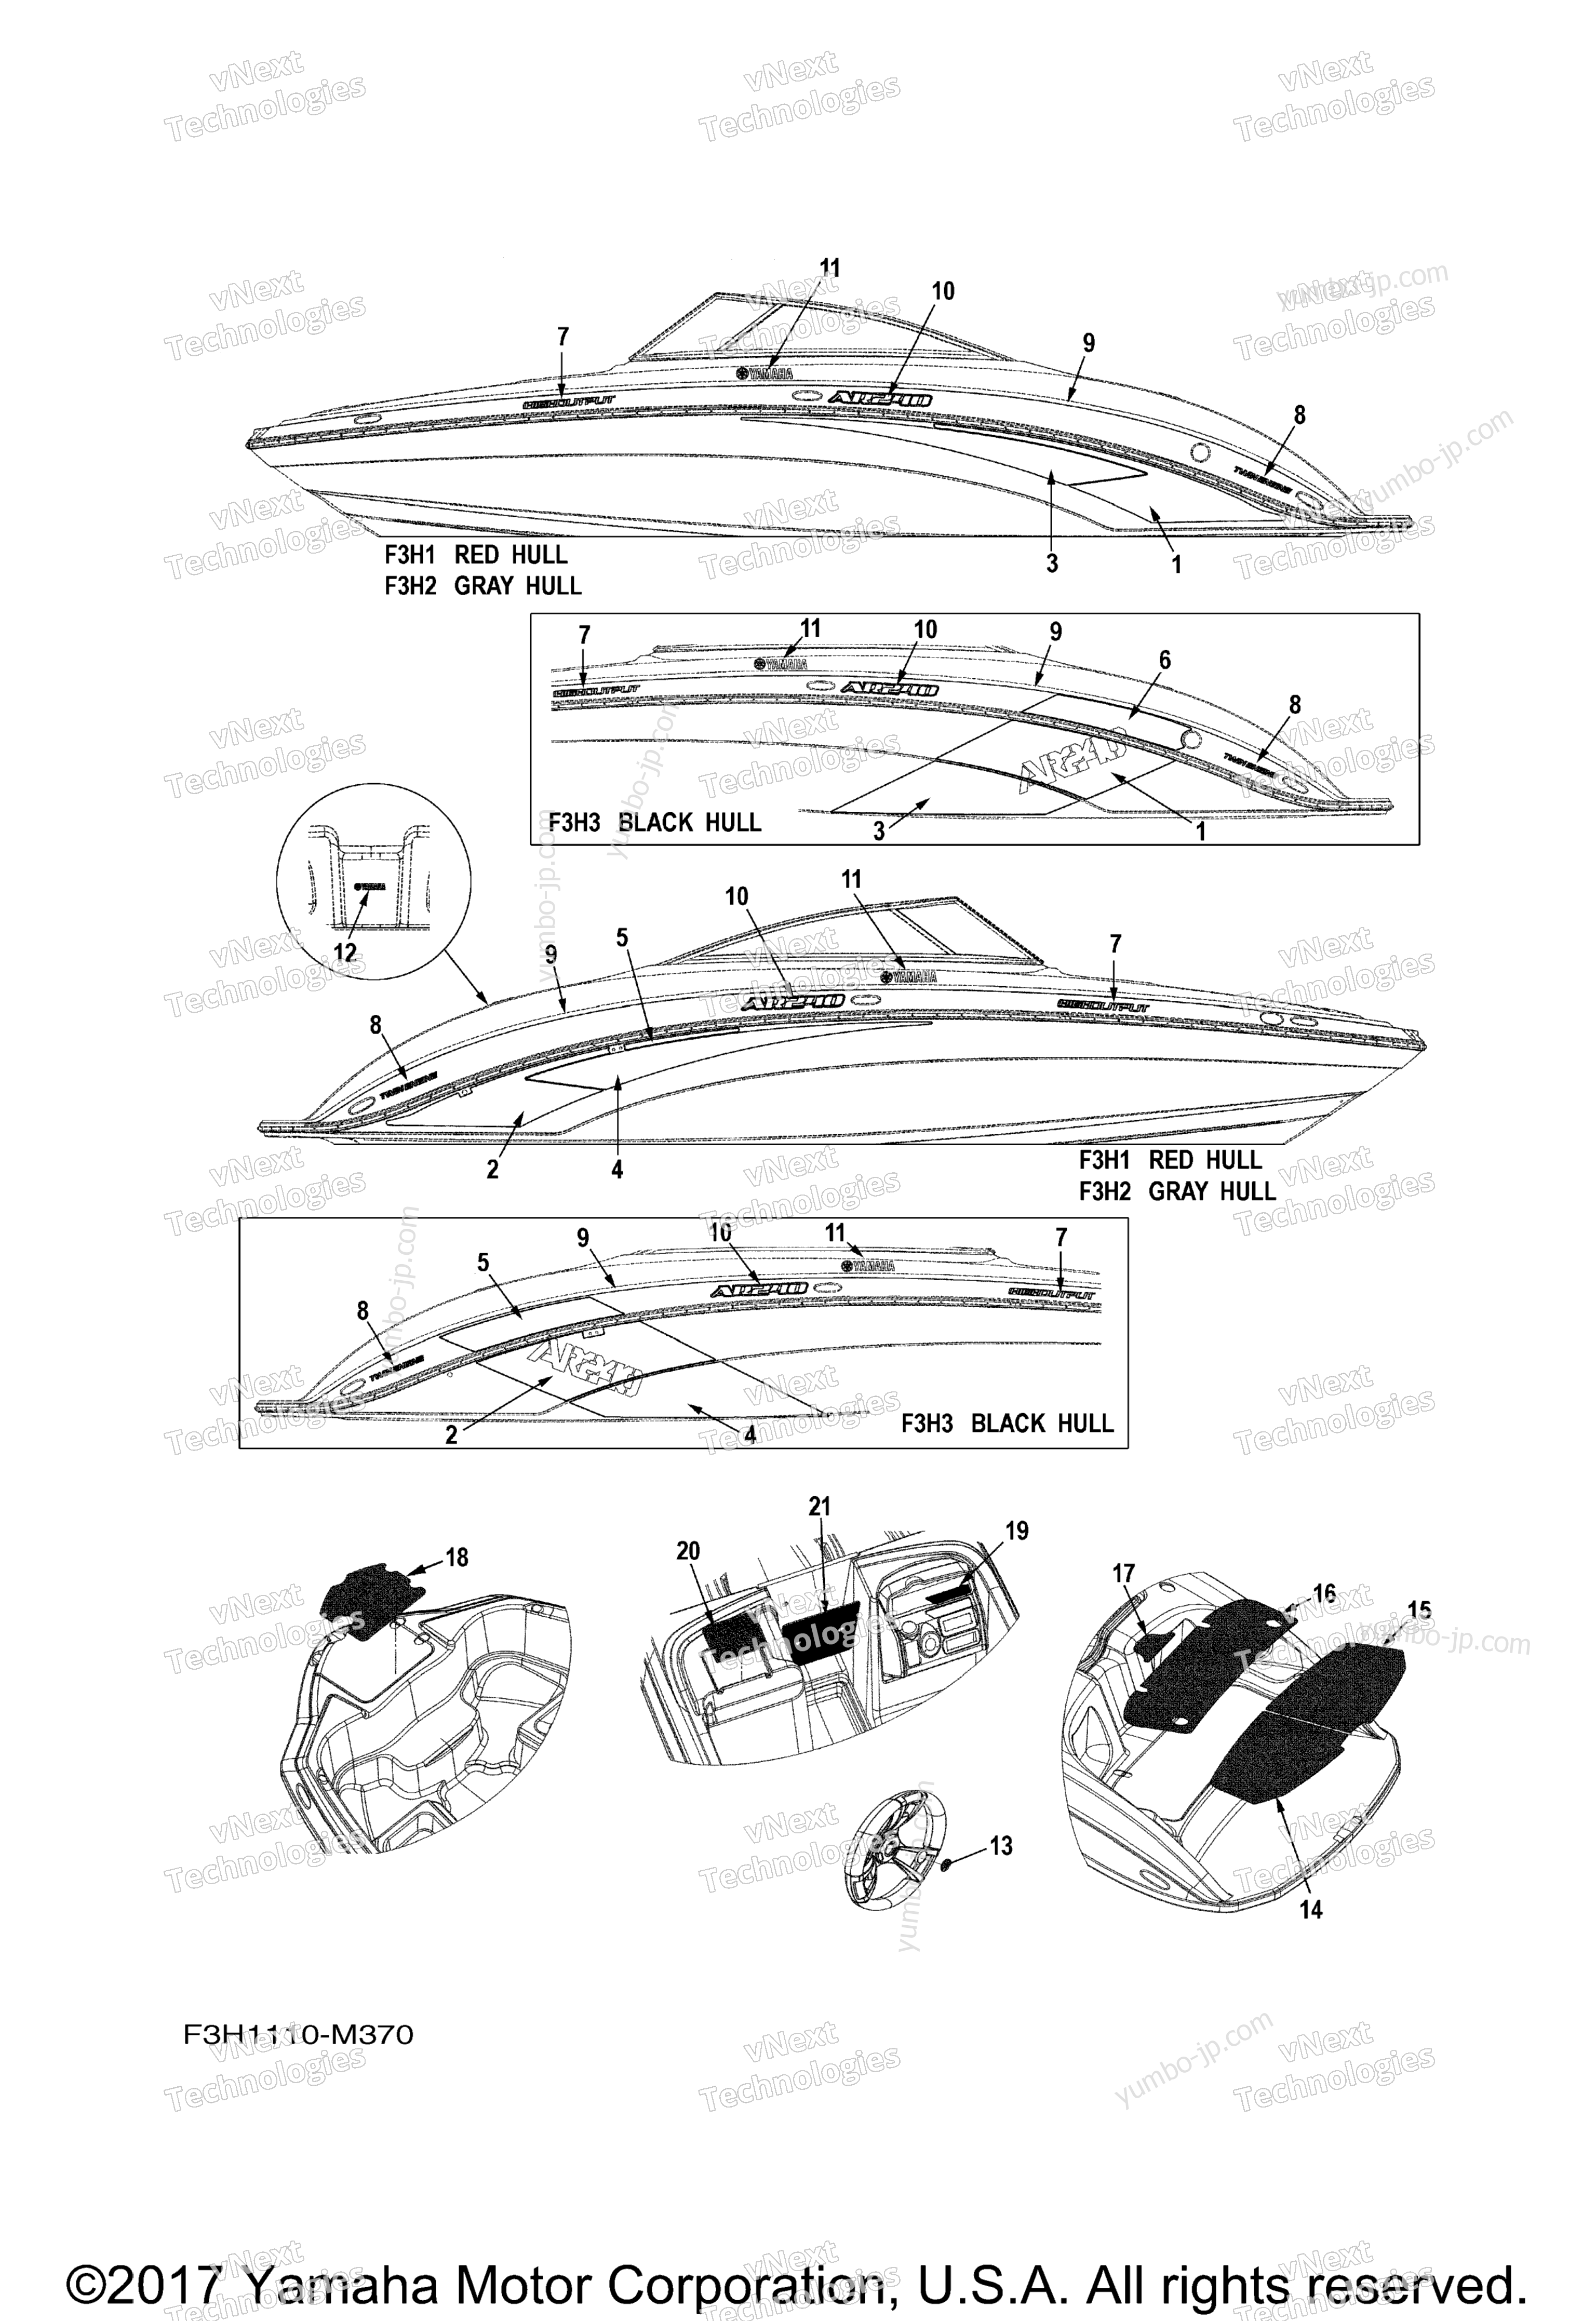 Graphics & Mats для катеров YAMAHA AR240 CALIFORNIA (SXT1800ALM) CA 2013 г.